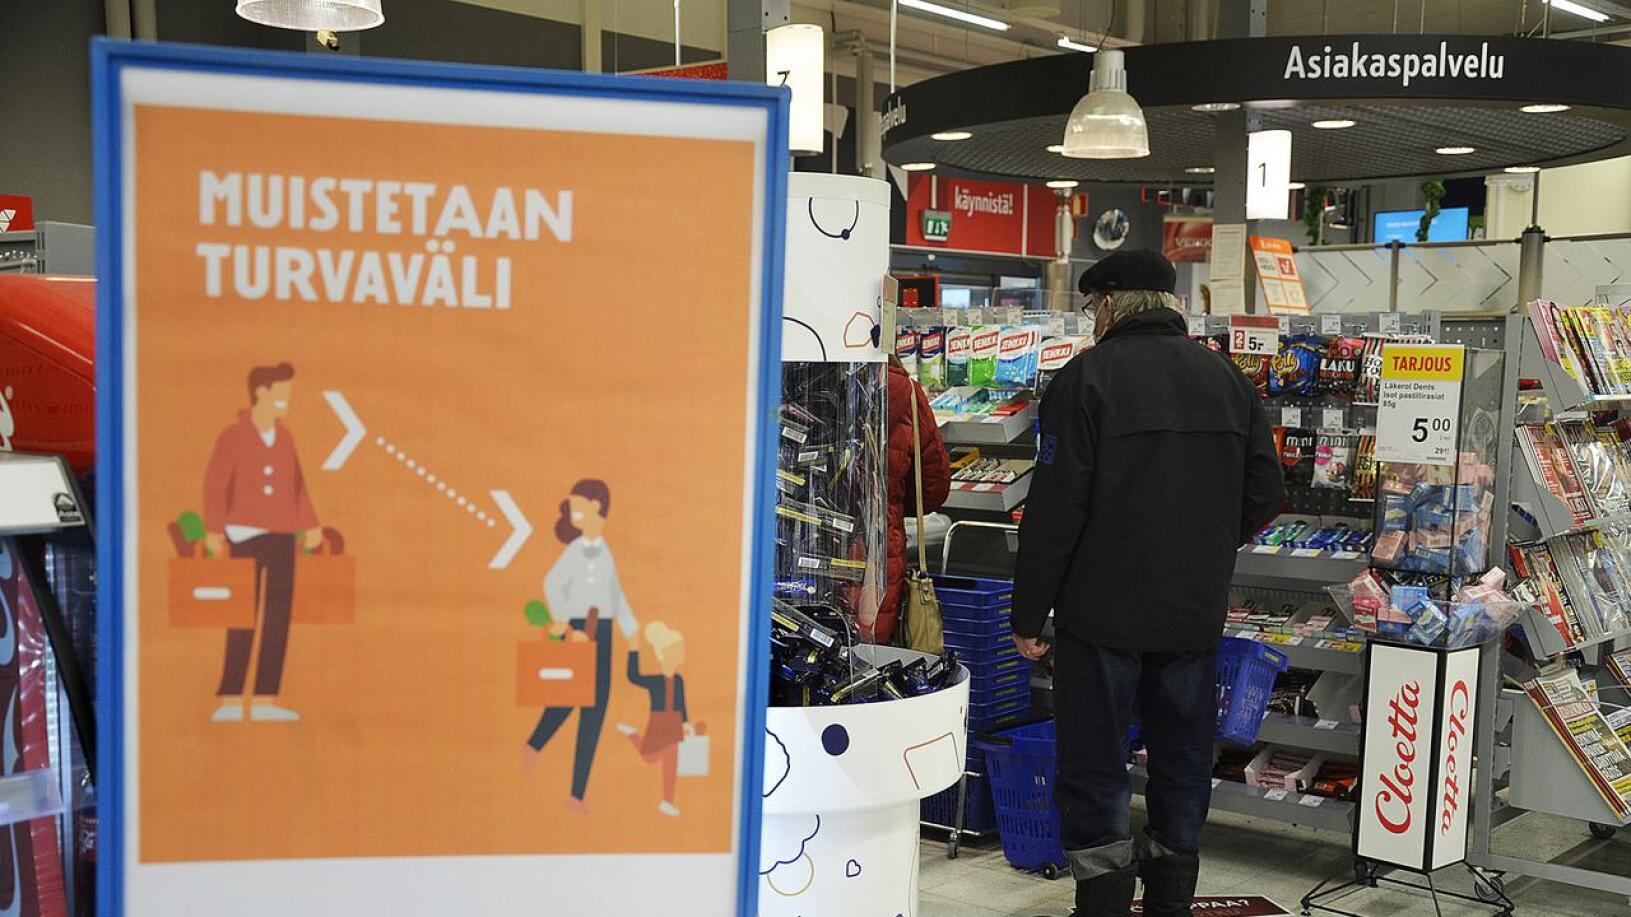 Ylijohtaja Terttu Savolainen painottaa turvavälien ja maksien käytön tarpeellisuutta kaupassa. Kokoontumisrajoituksia tarkastellaan uudelleen vapun alla.